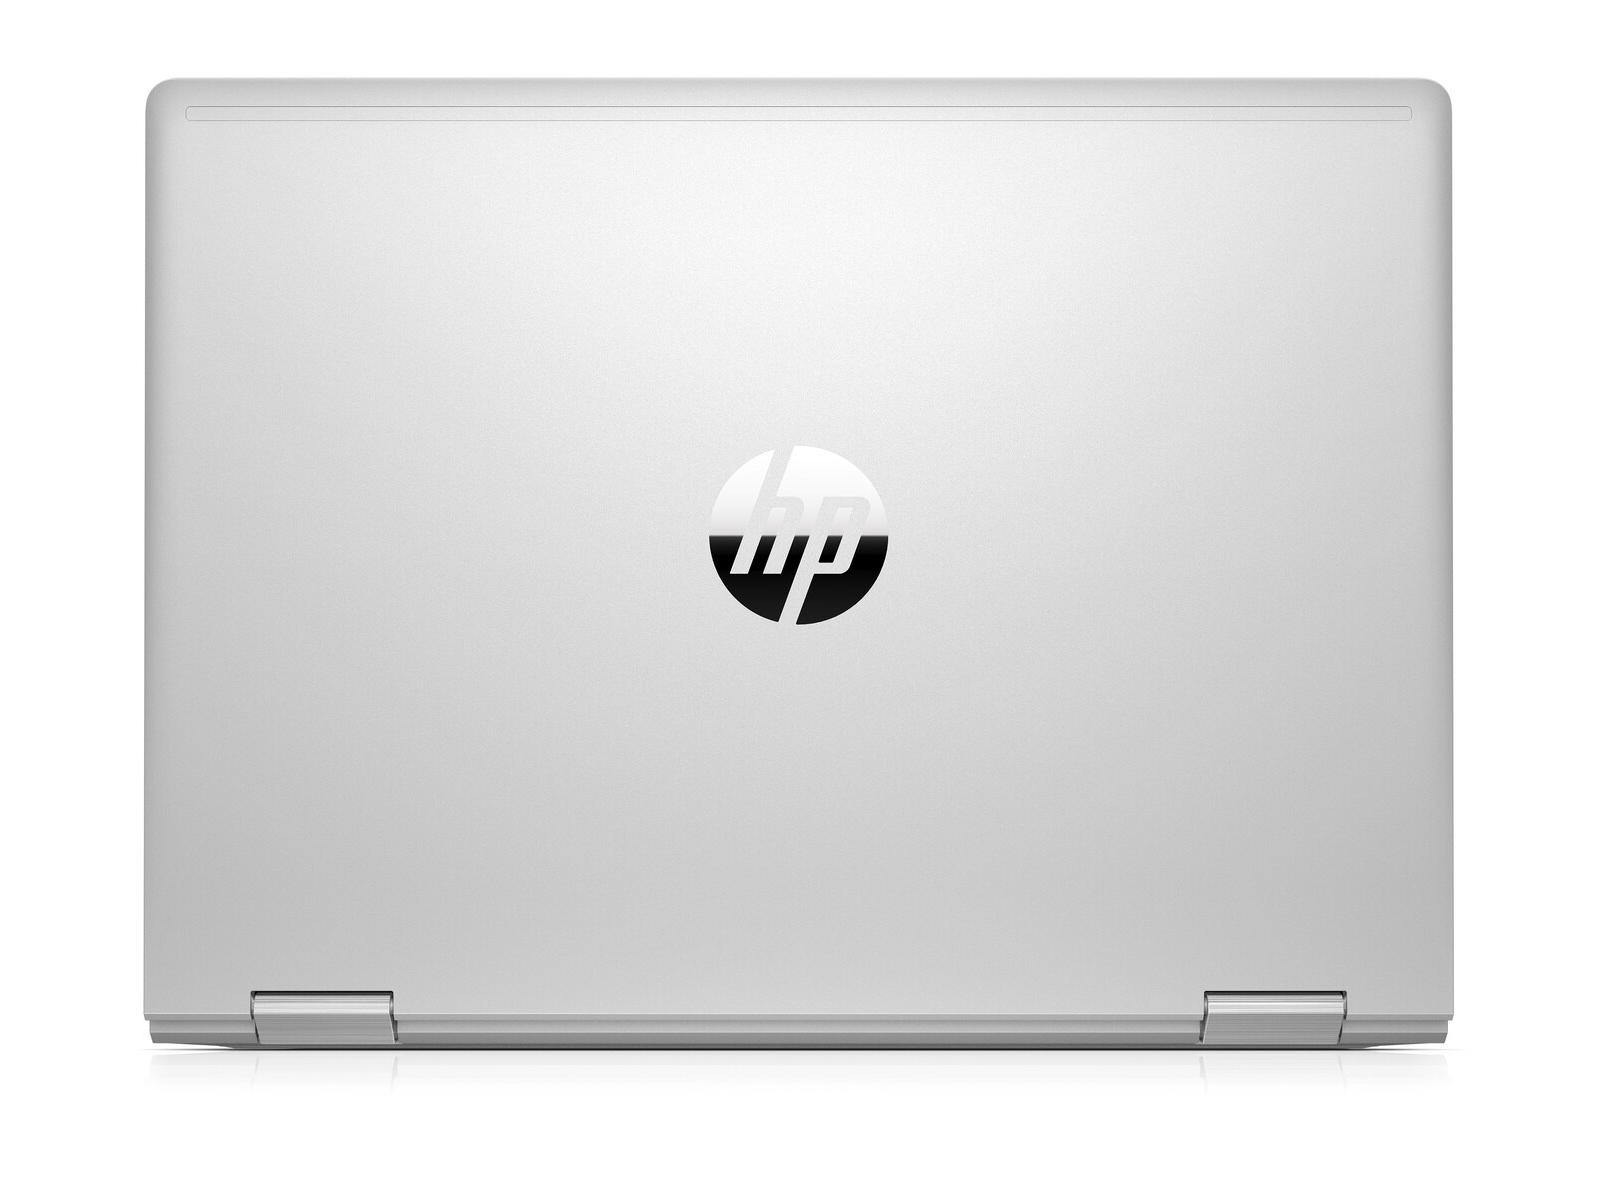 HP ProBook x360 435 G7, Ryzen 3 4300U